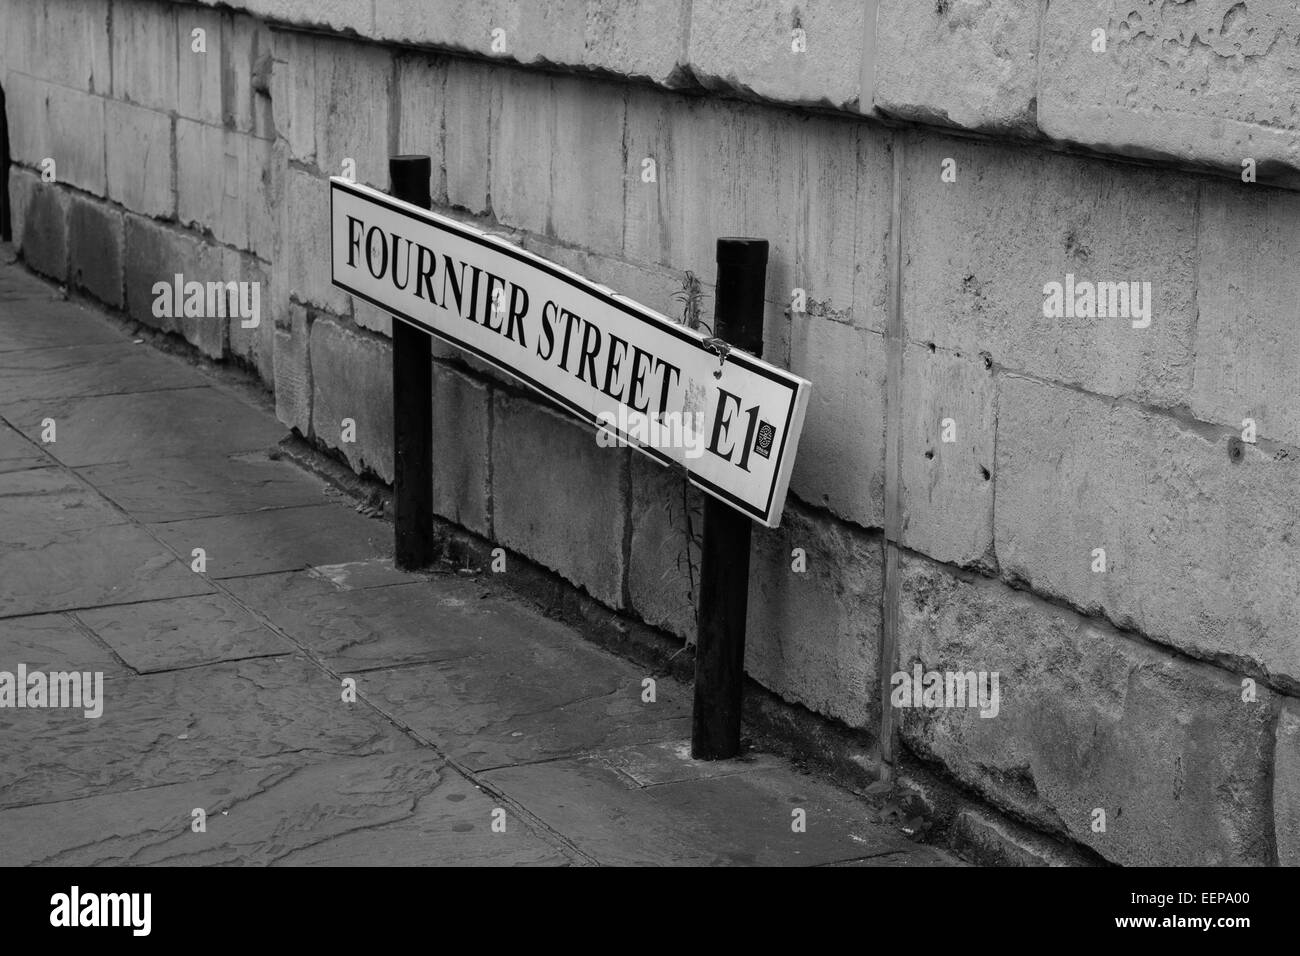 Fournier Street, E1, London Stock Photo